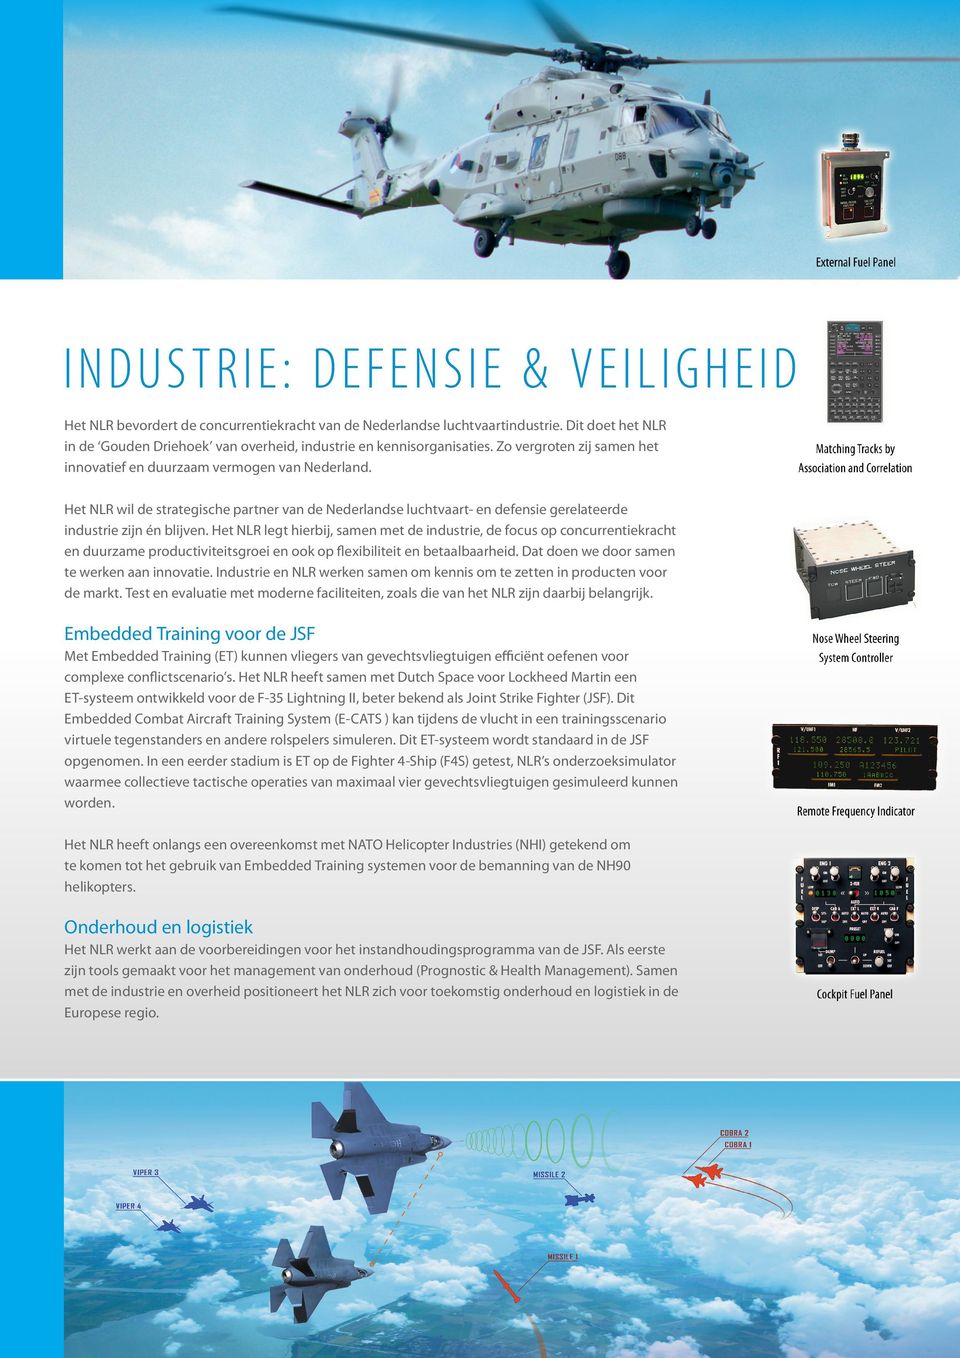 Het NLR wil de strategische partner van de Nederlandse luchtvaart- en defensie gerelateerde industrie zijn én blijven.